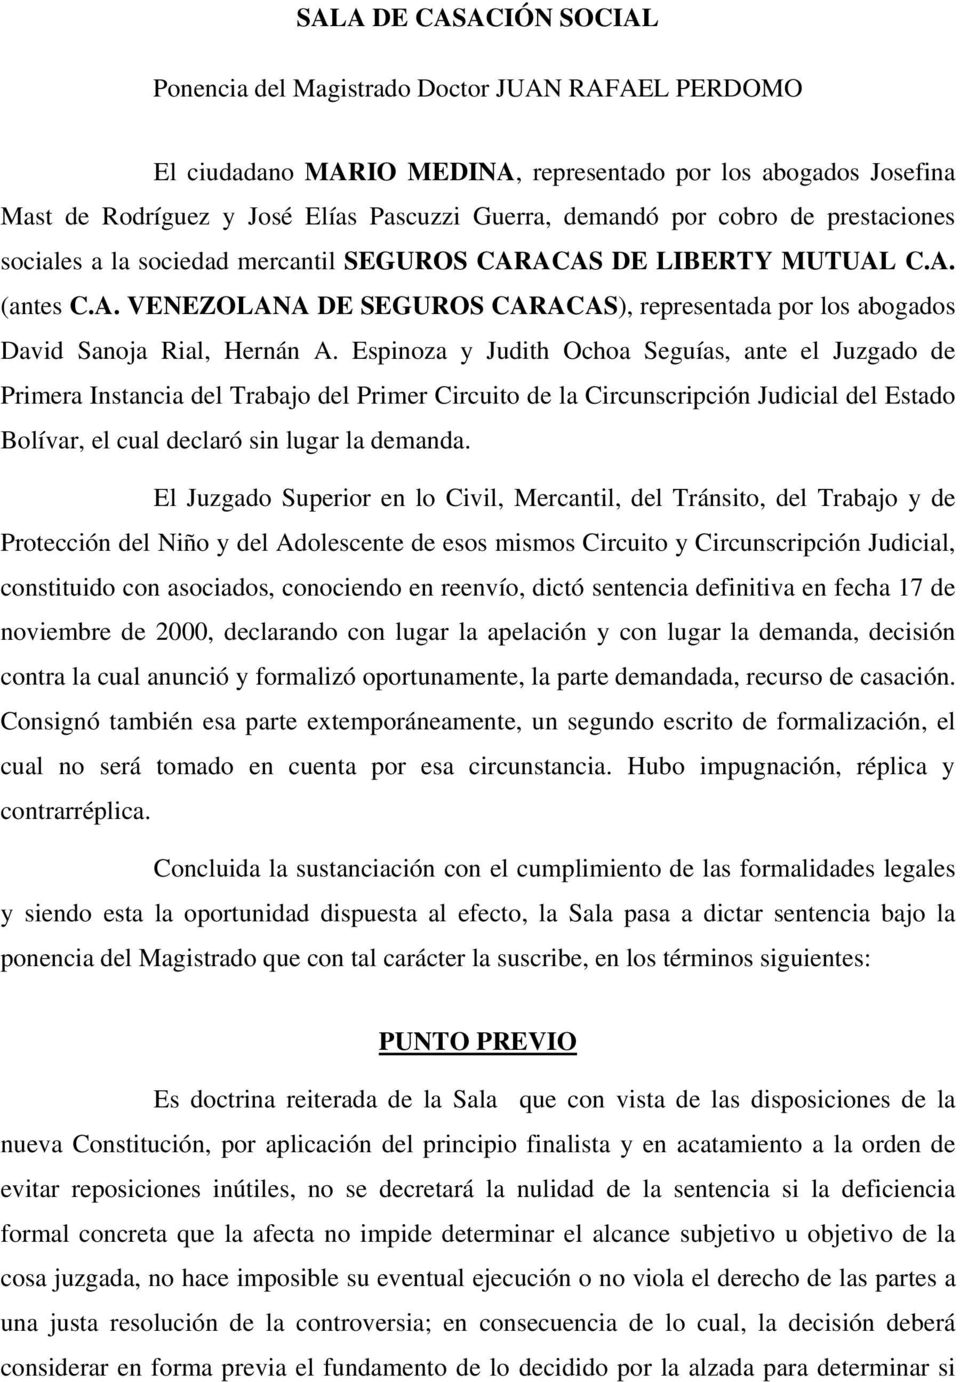 Espinoza y Judith Ochoa Seguías, ante el Juzgado de Primera Instancia del Trabajo del Primer Circuito de la Circunscripción Judicial del Estado Bolívar, el cual declaró sin lugar la demanda.